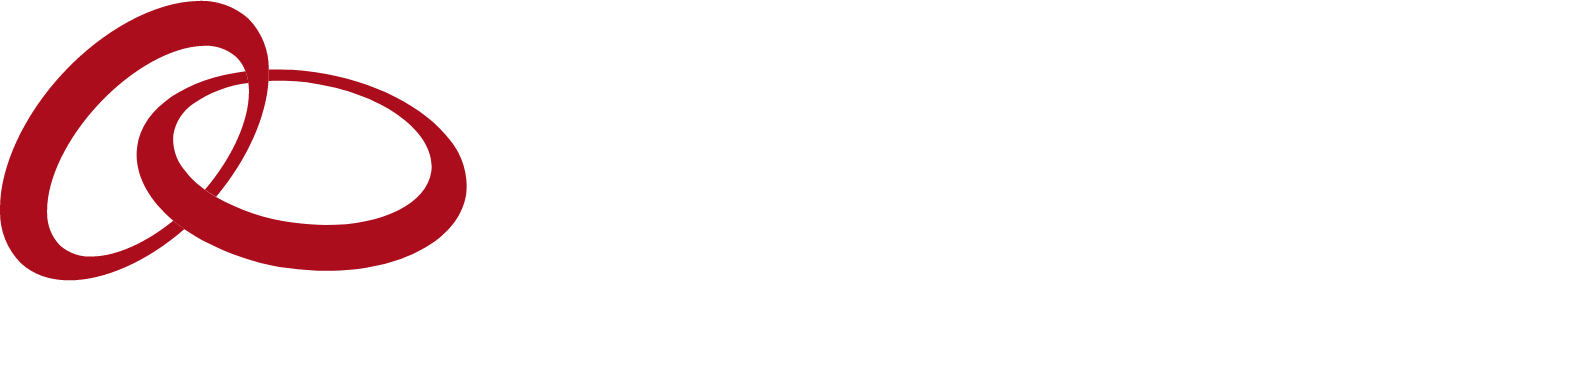 Entegris logo large for dark backgrounds (transparent PNG)